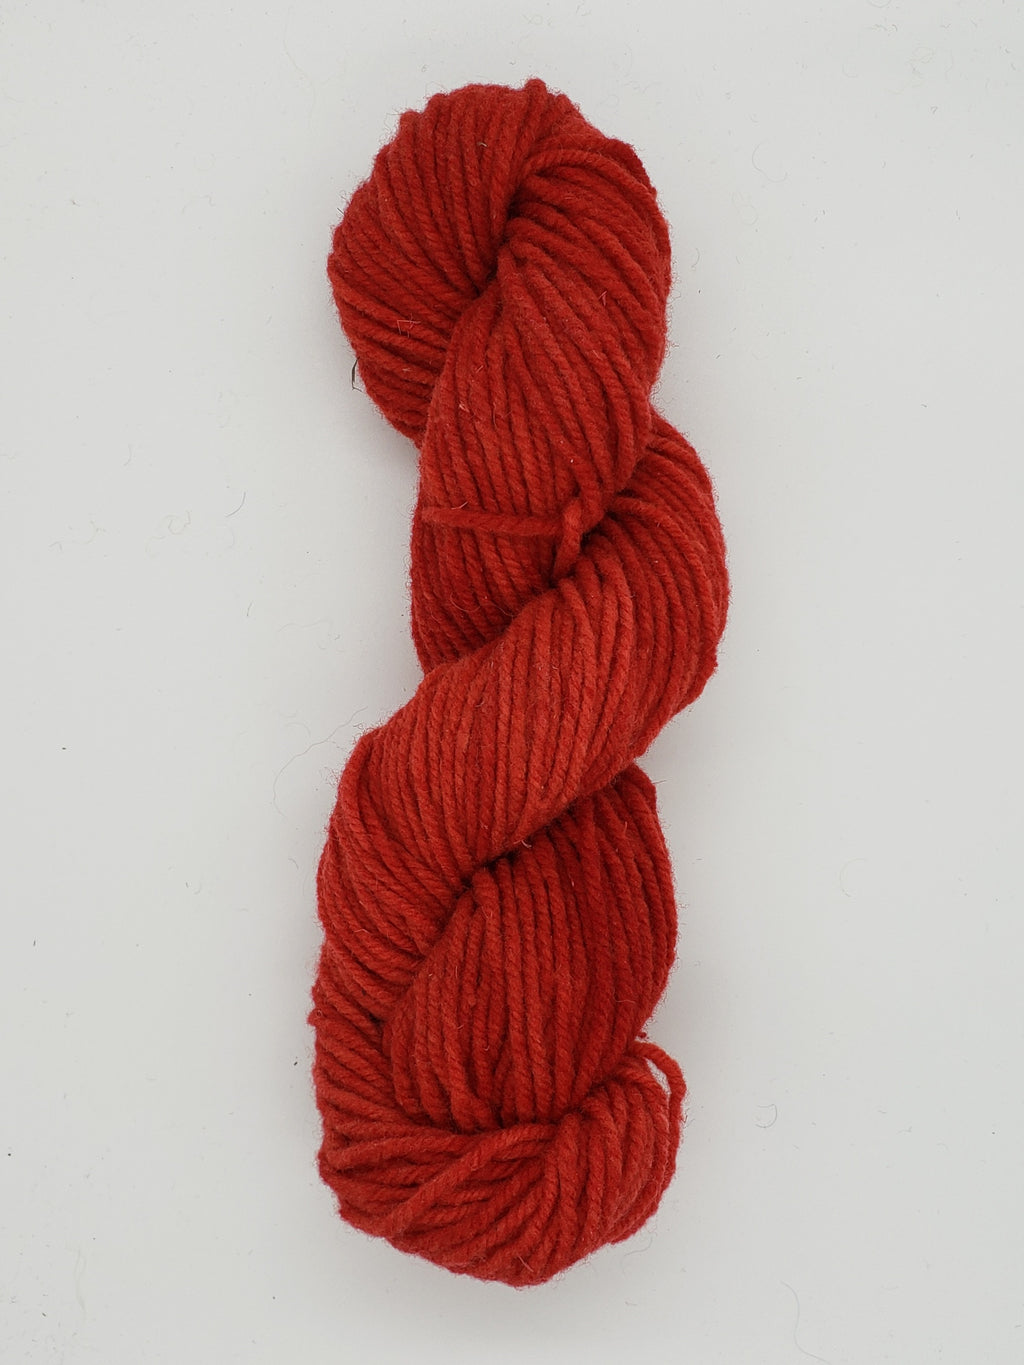 Wonder Woolen - VERMILLION -  Fleece Artist Hand Dyed Yarn